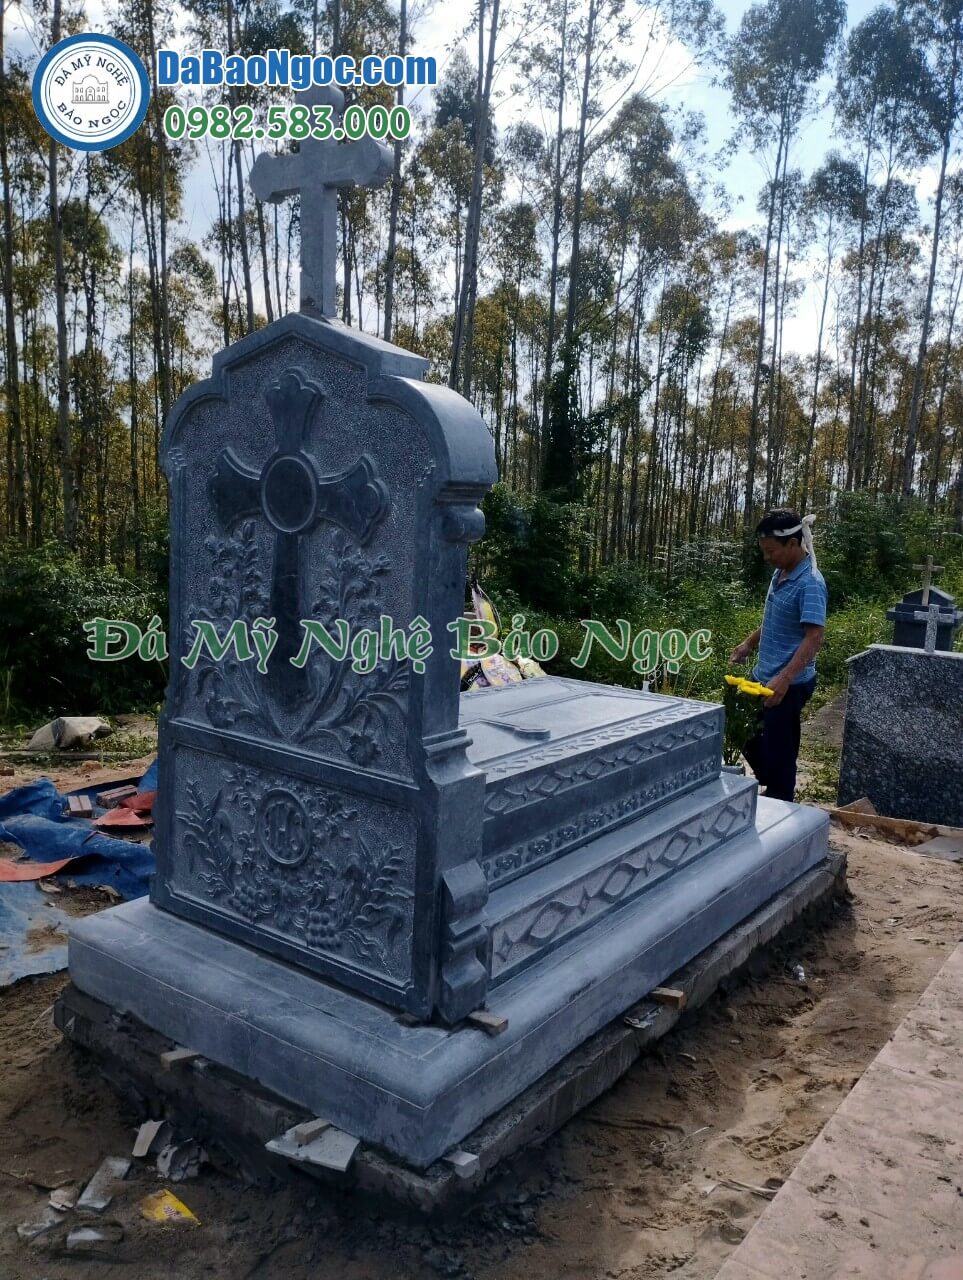 Mẫu mộ đá công giáo đẹp ở Thái Bình do đá mỹ nghệ Bảo Ngọc chế tác và thi công